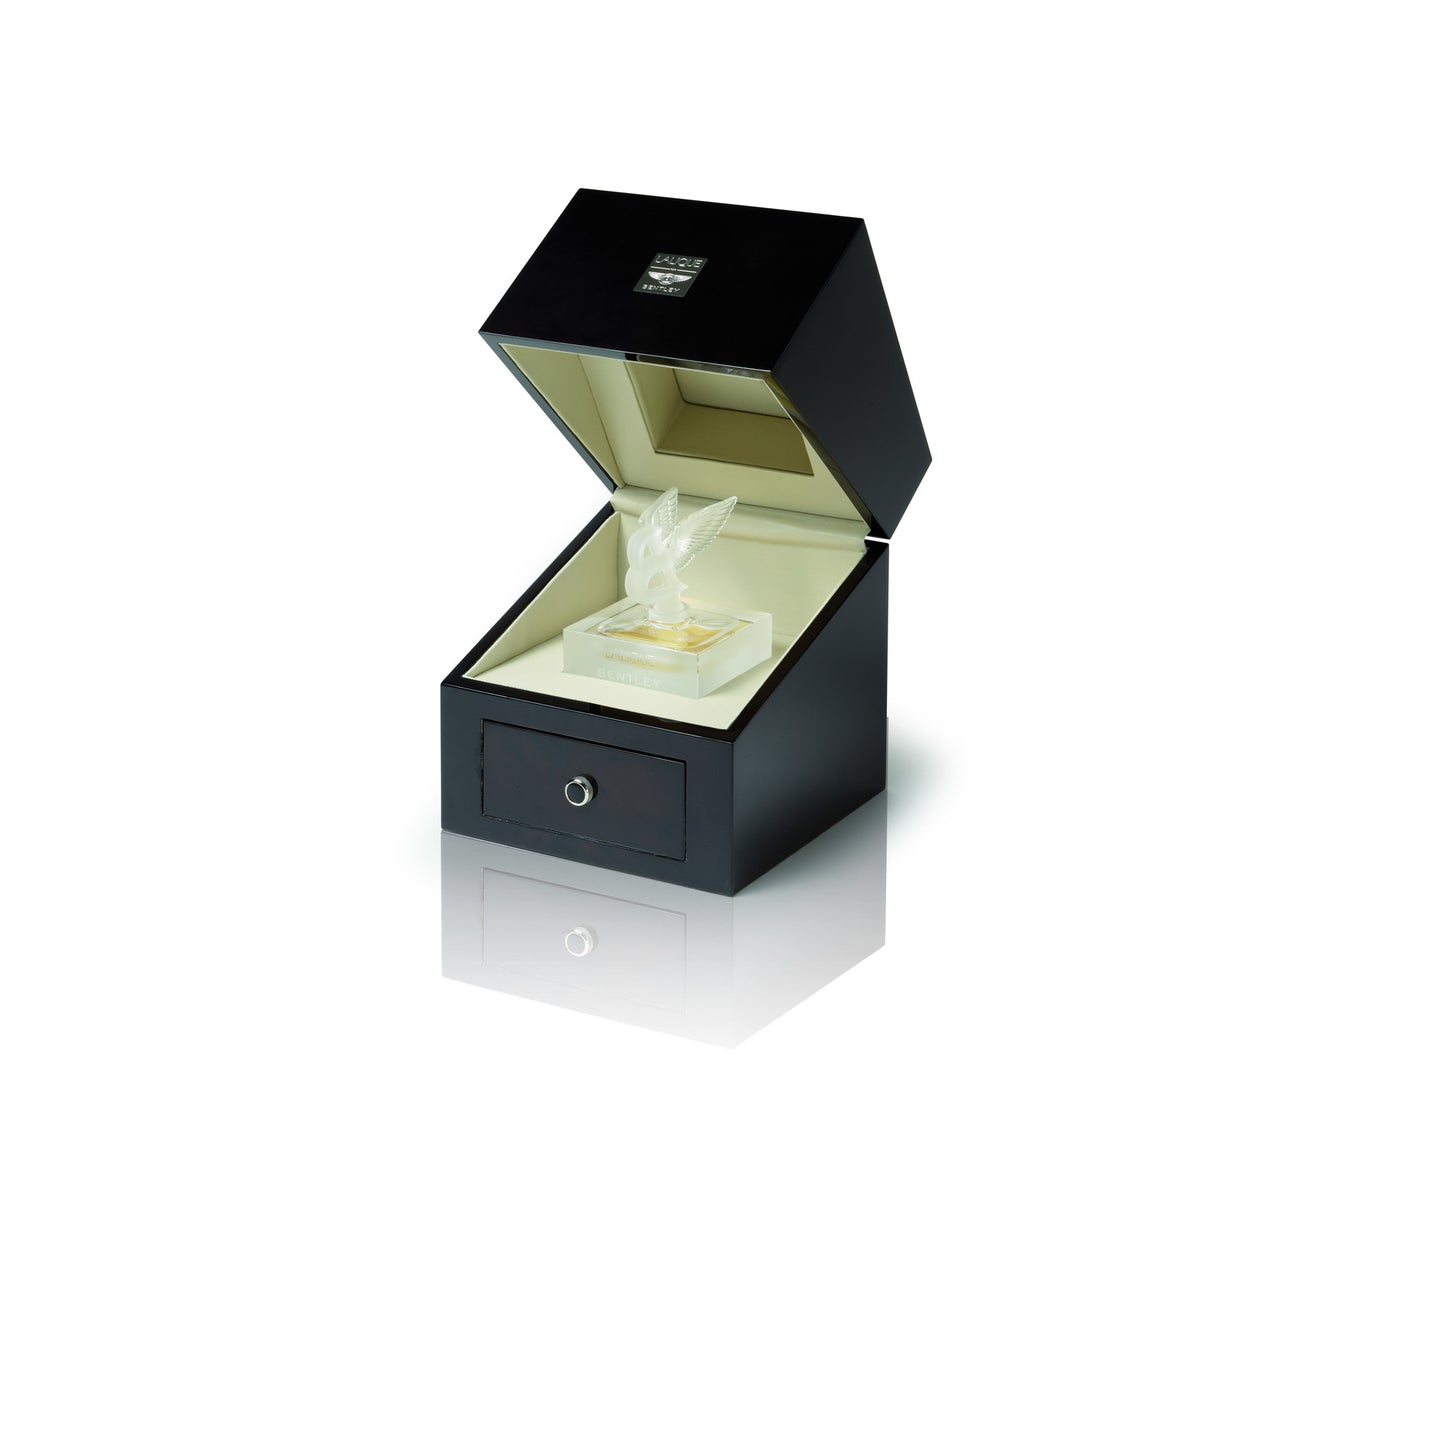 Lalique For Bentley 1.35 oz Crystal Flacon Eau de Parfum